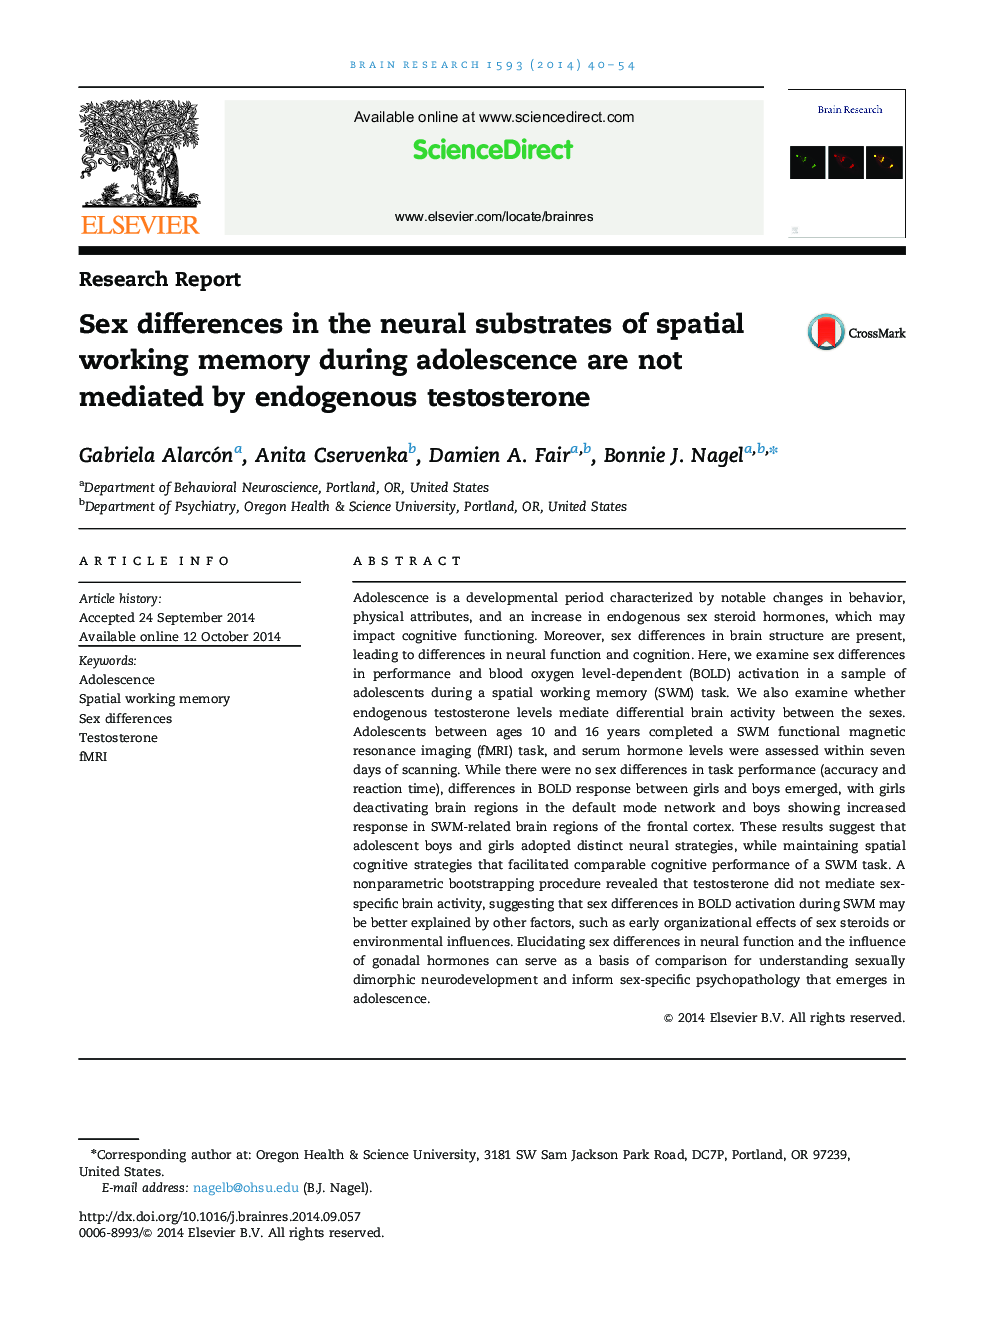 تفاوت های جنسی در زمینه های عصبی حافظه کاری مکانی در طی نوجوانی توسط تستوسترون اندوژن 